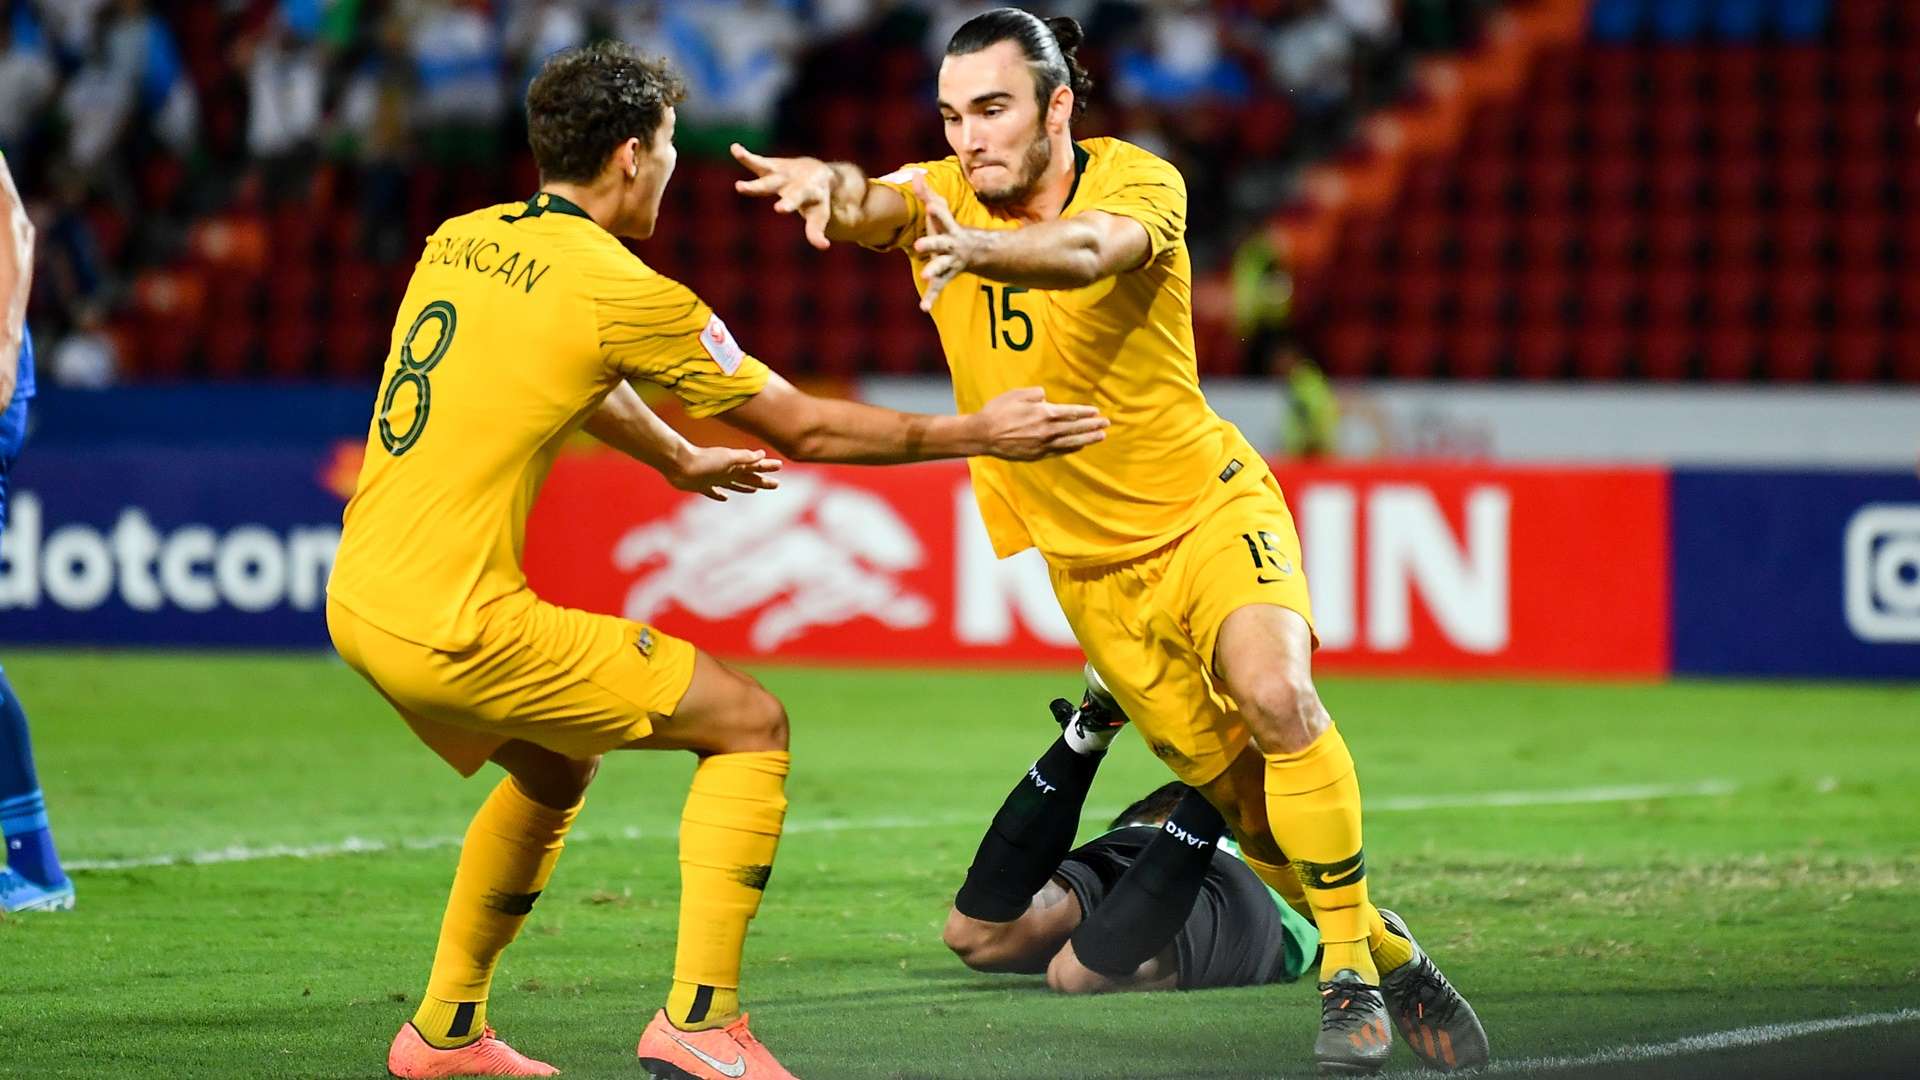 Nicholas D'Agostino | U23 Australia vs U23 Uzbekistan | AFC U23 Championship 2020 | Third place match